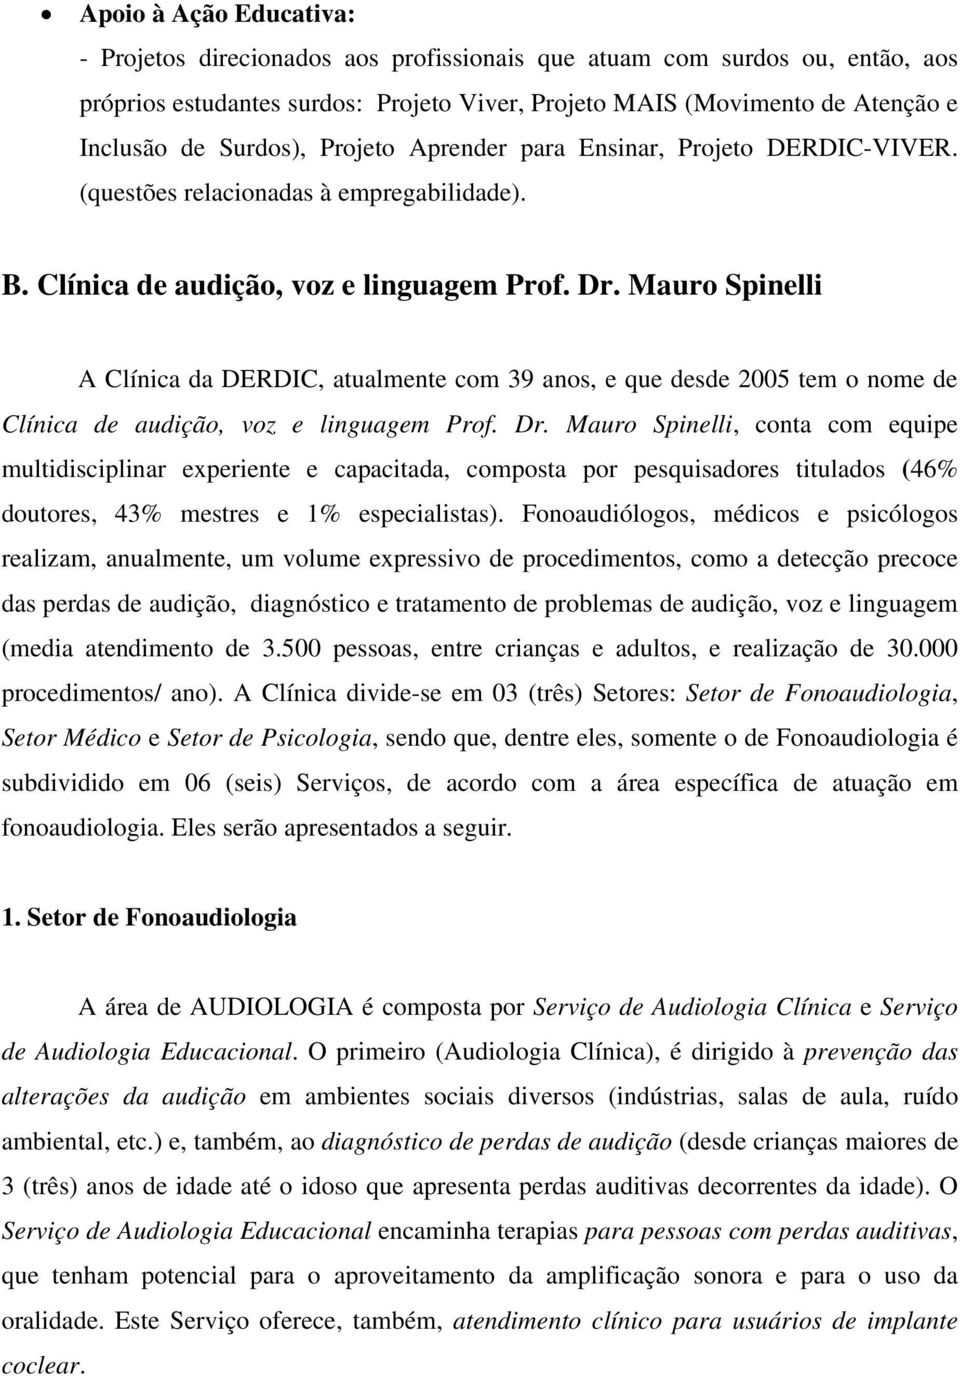 Mauro Spinelli A Clínica da DERDIC, atualmente com 39 anos, e que desde 2005 tem o nome de Clínica de audição, voz e linguagem Prof. Dr.